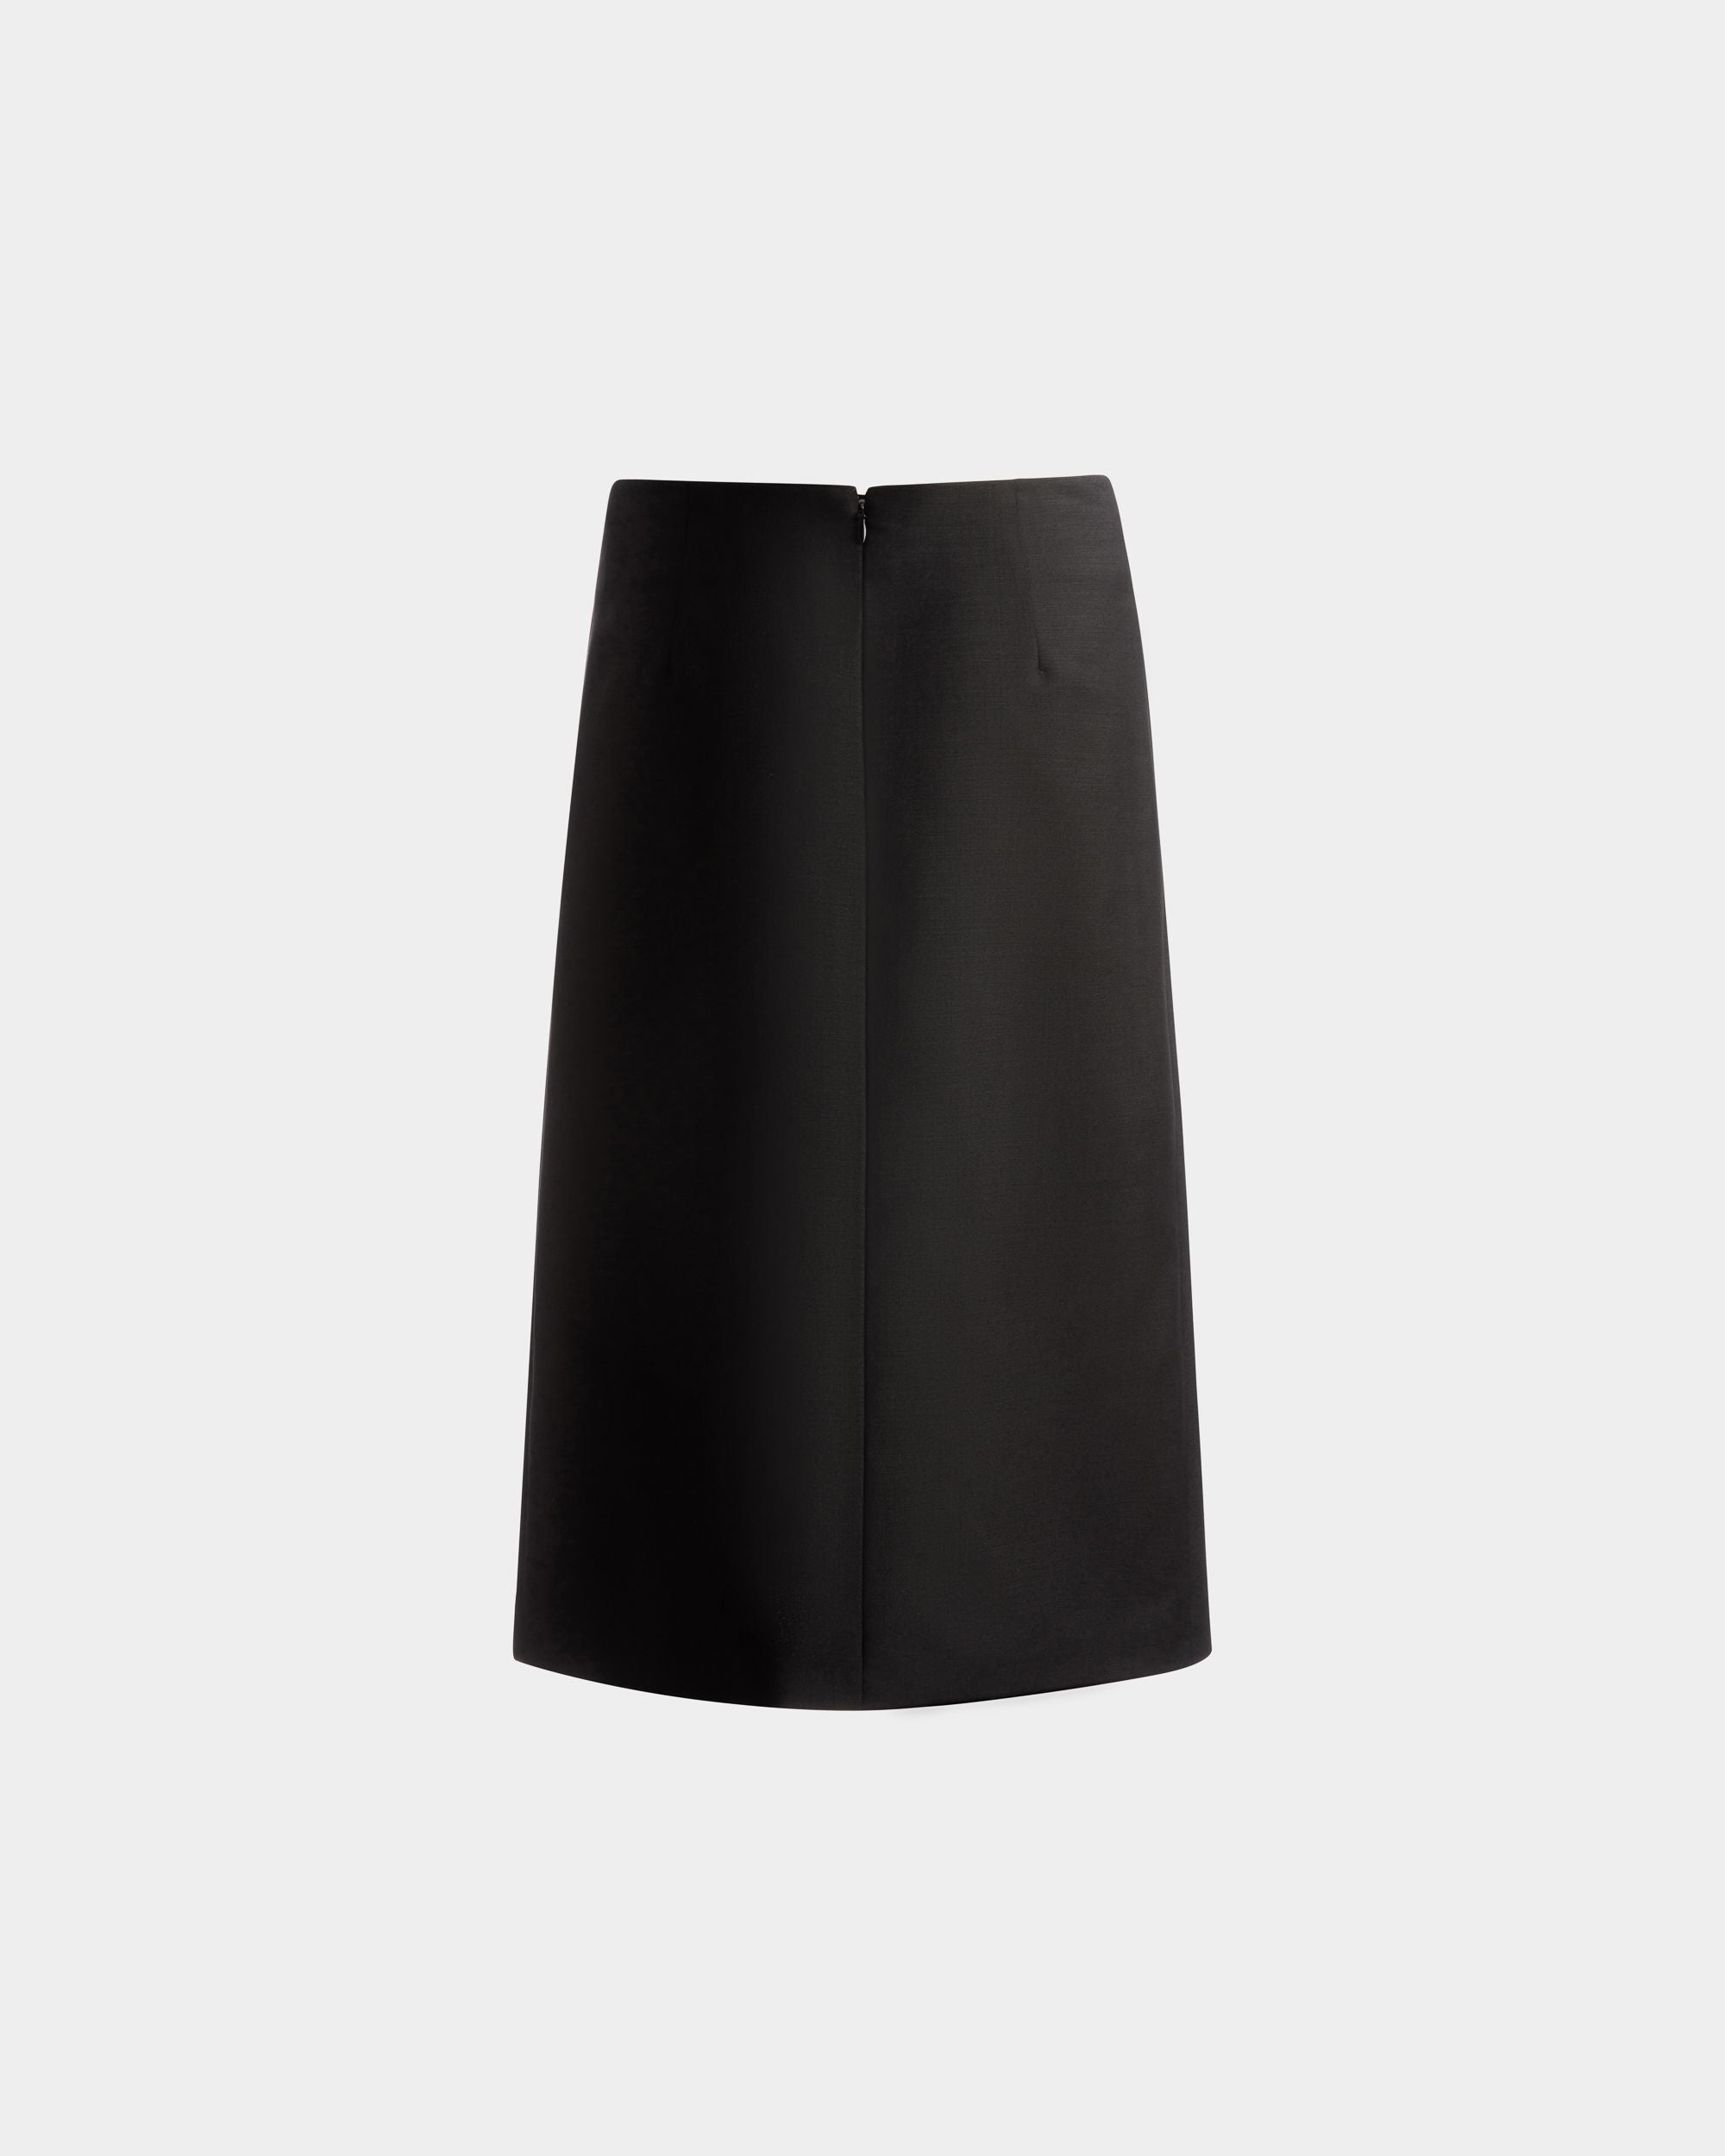 Knee Length Wrap Skirt | Women's Skirt | Black Mohair Wool Mix | Bally | Still Life Back